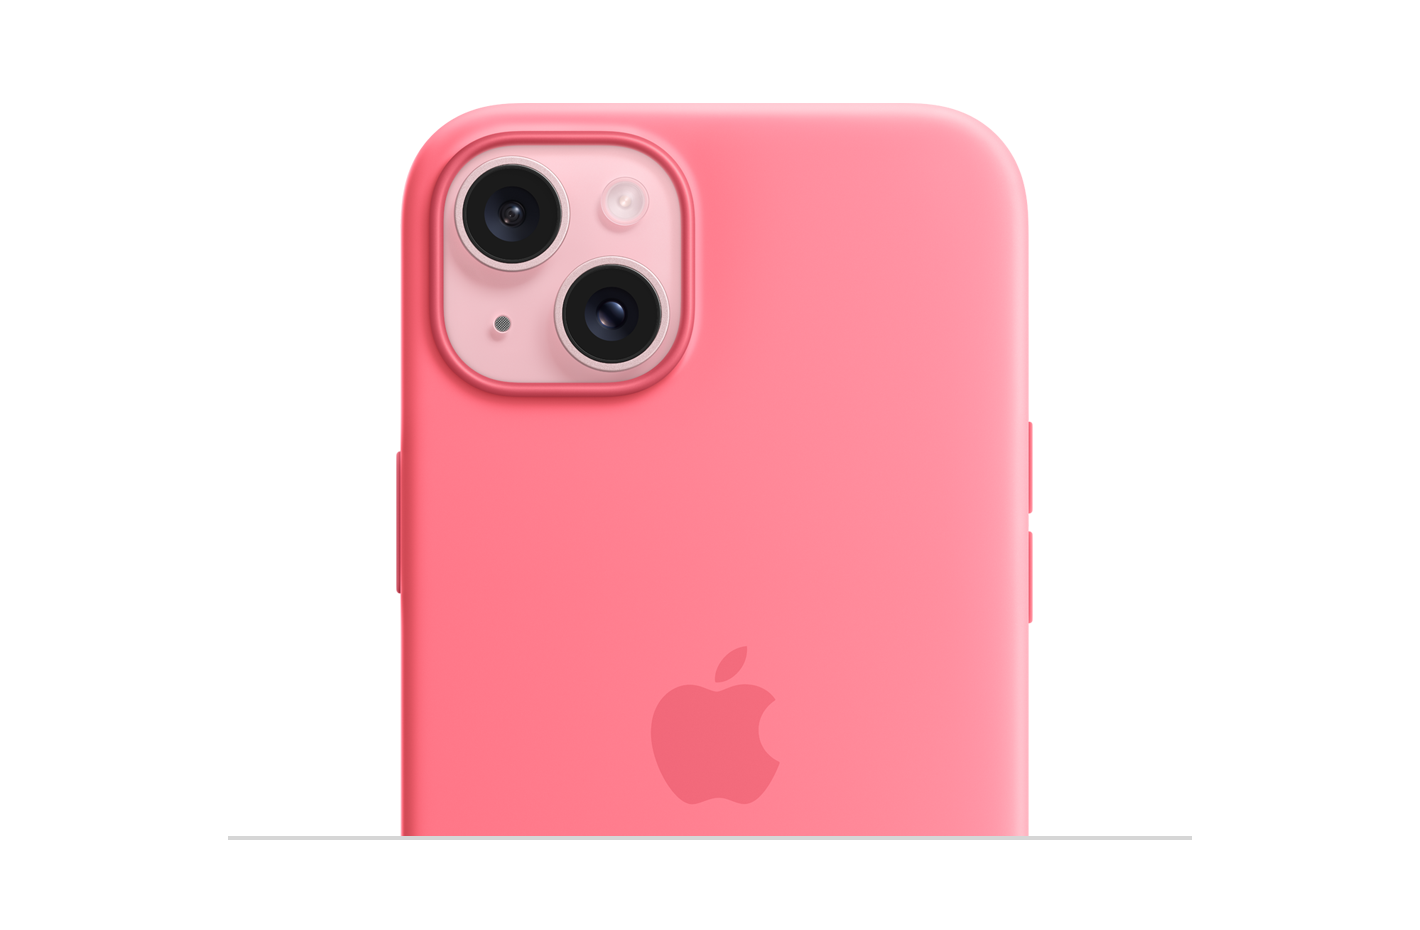 Silikonowe etui w kolorze różowym z MagSafe przyczepione do iPhone’a 15 w kolorze różowym. Wytłoczone logo Apple pośrodku etui. iPhone widoczny przez wycięcie na aparat. 